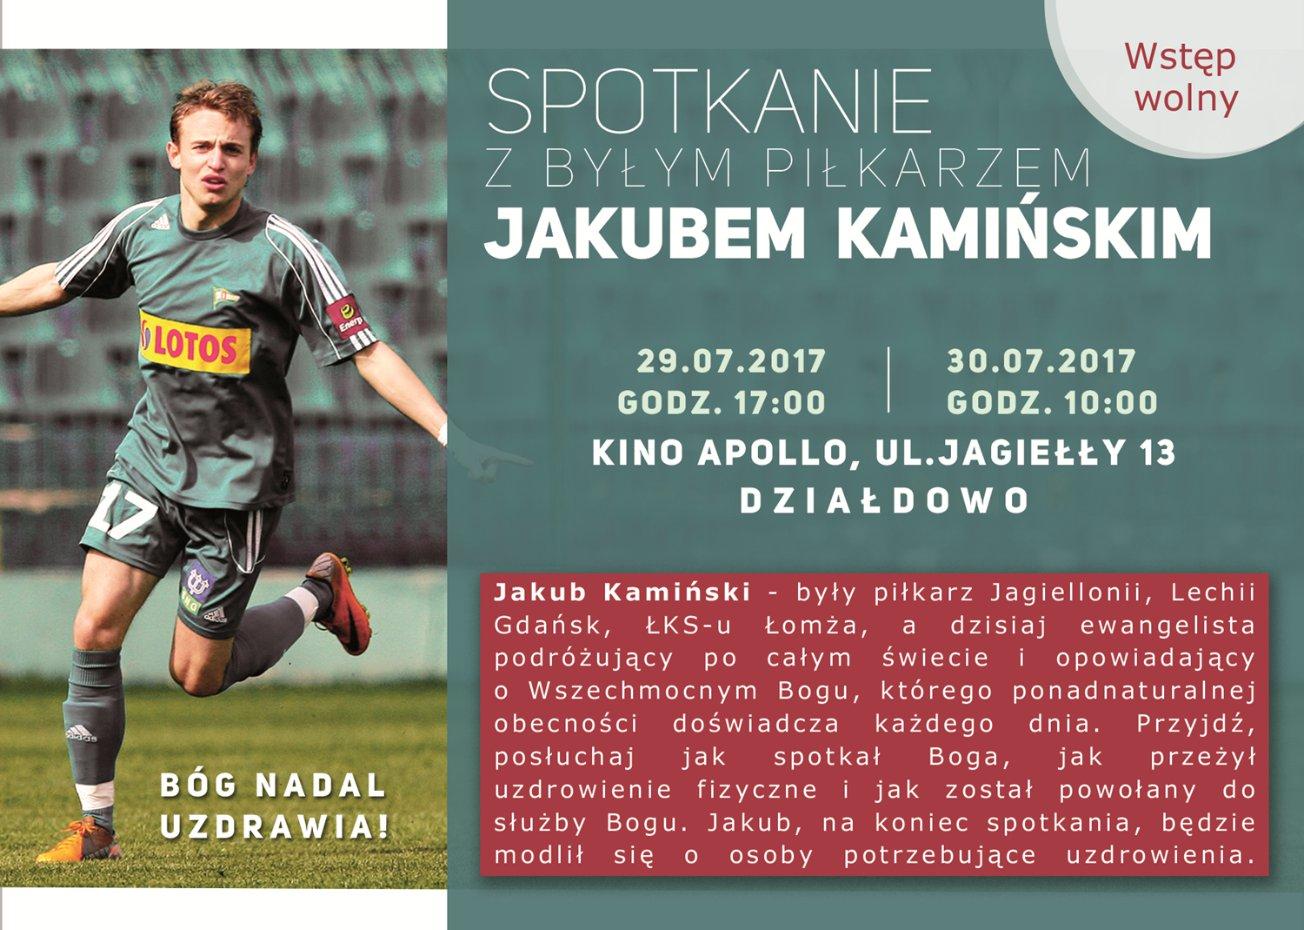 Od piłkarza do ewangelisty – spotkanie z Jakubem Kamińskim